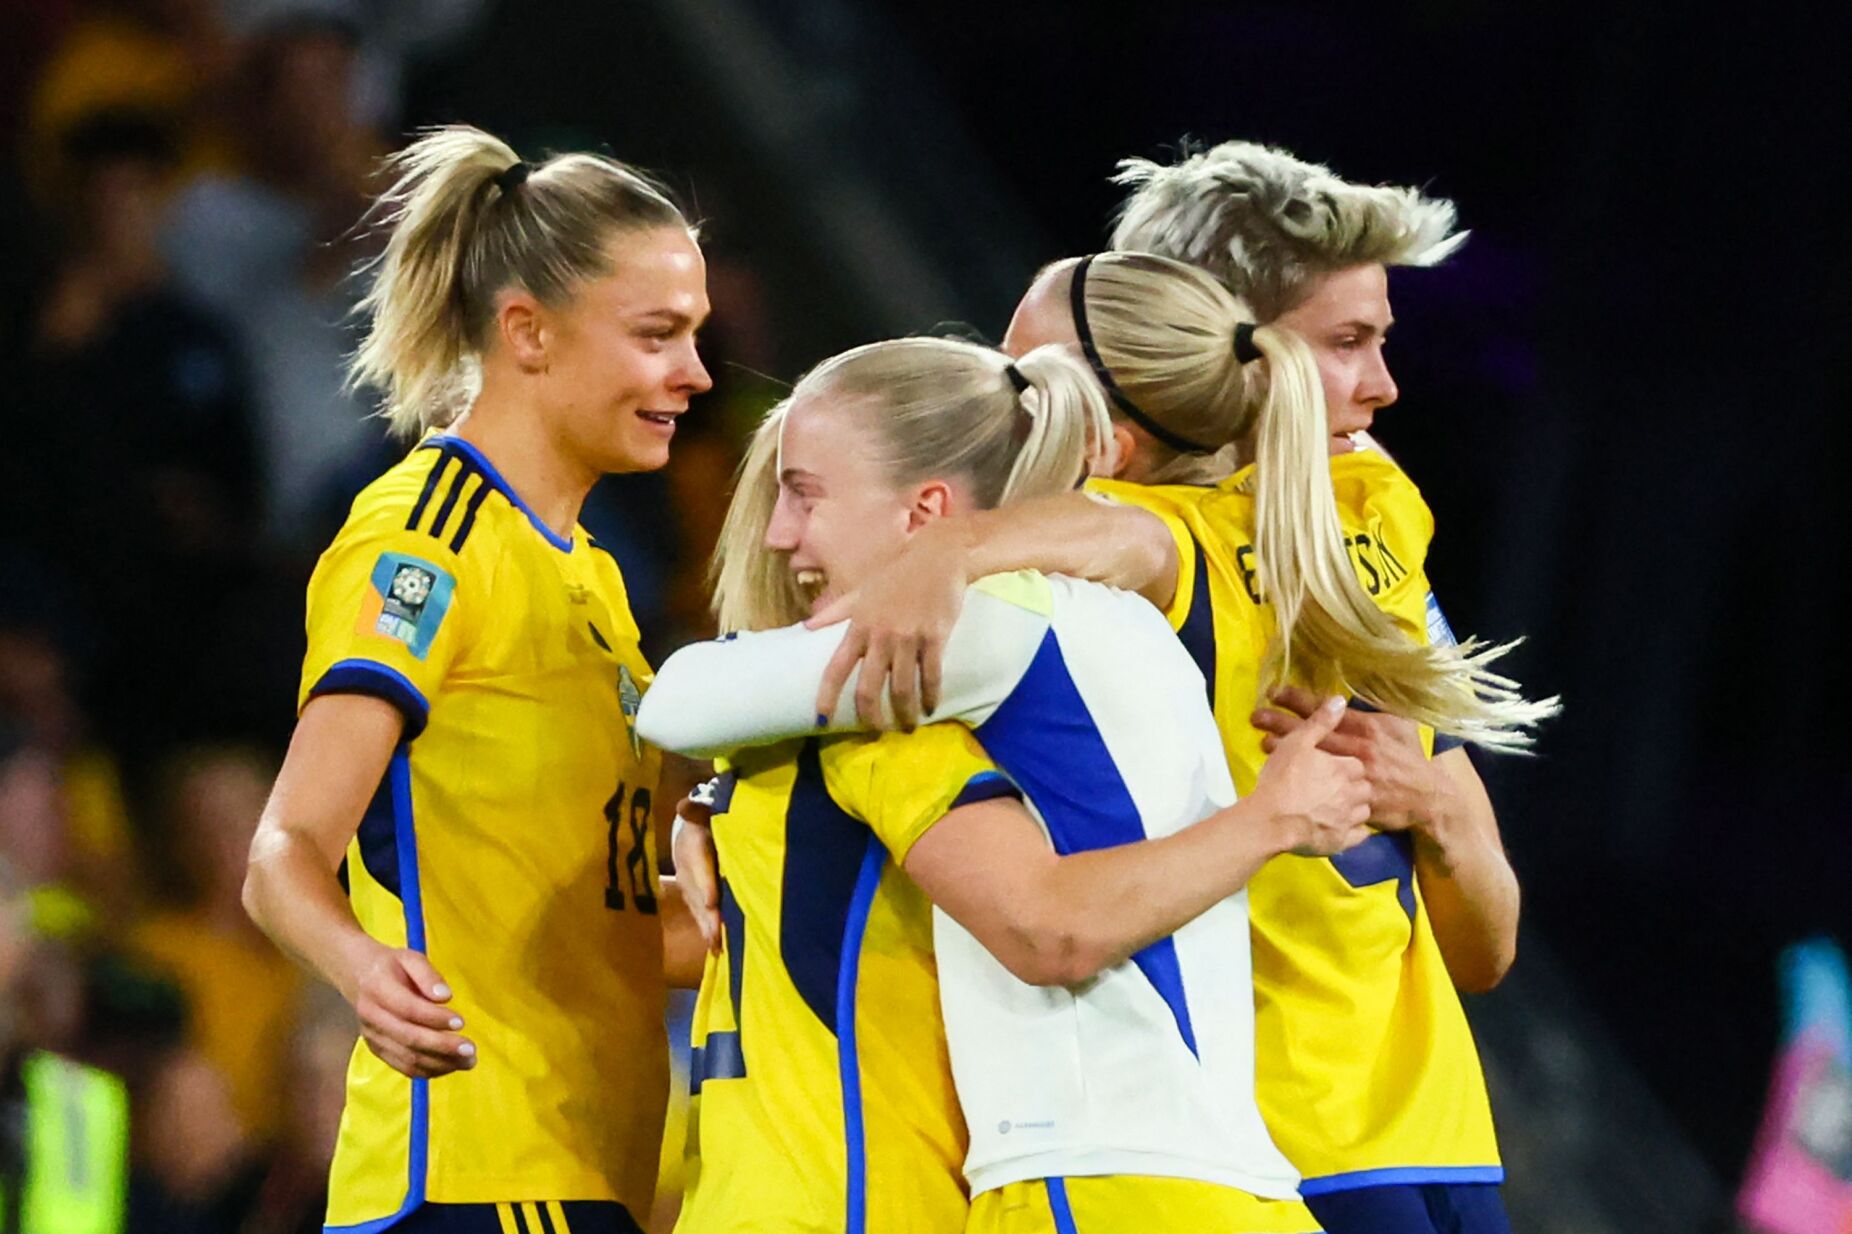 Suécia garante terceiro lugar do Mundial feminino de futebol